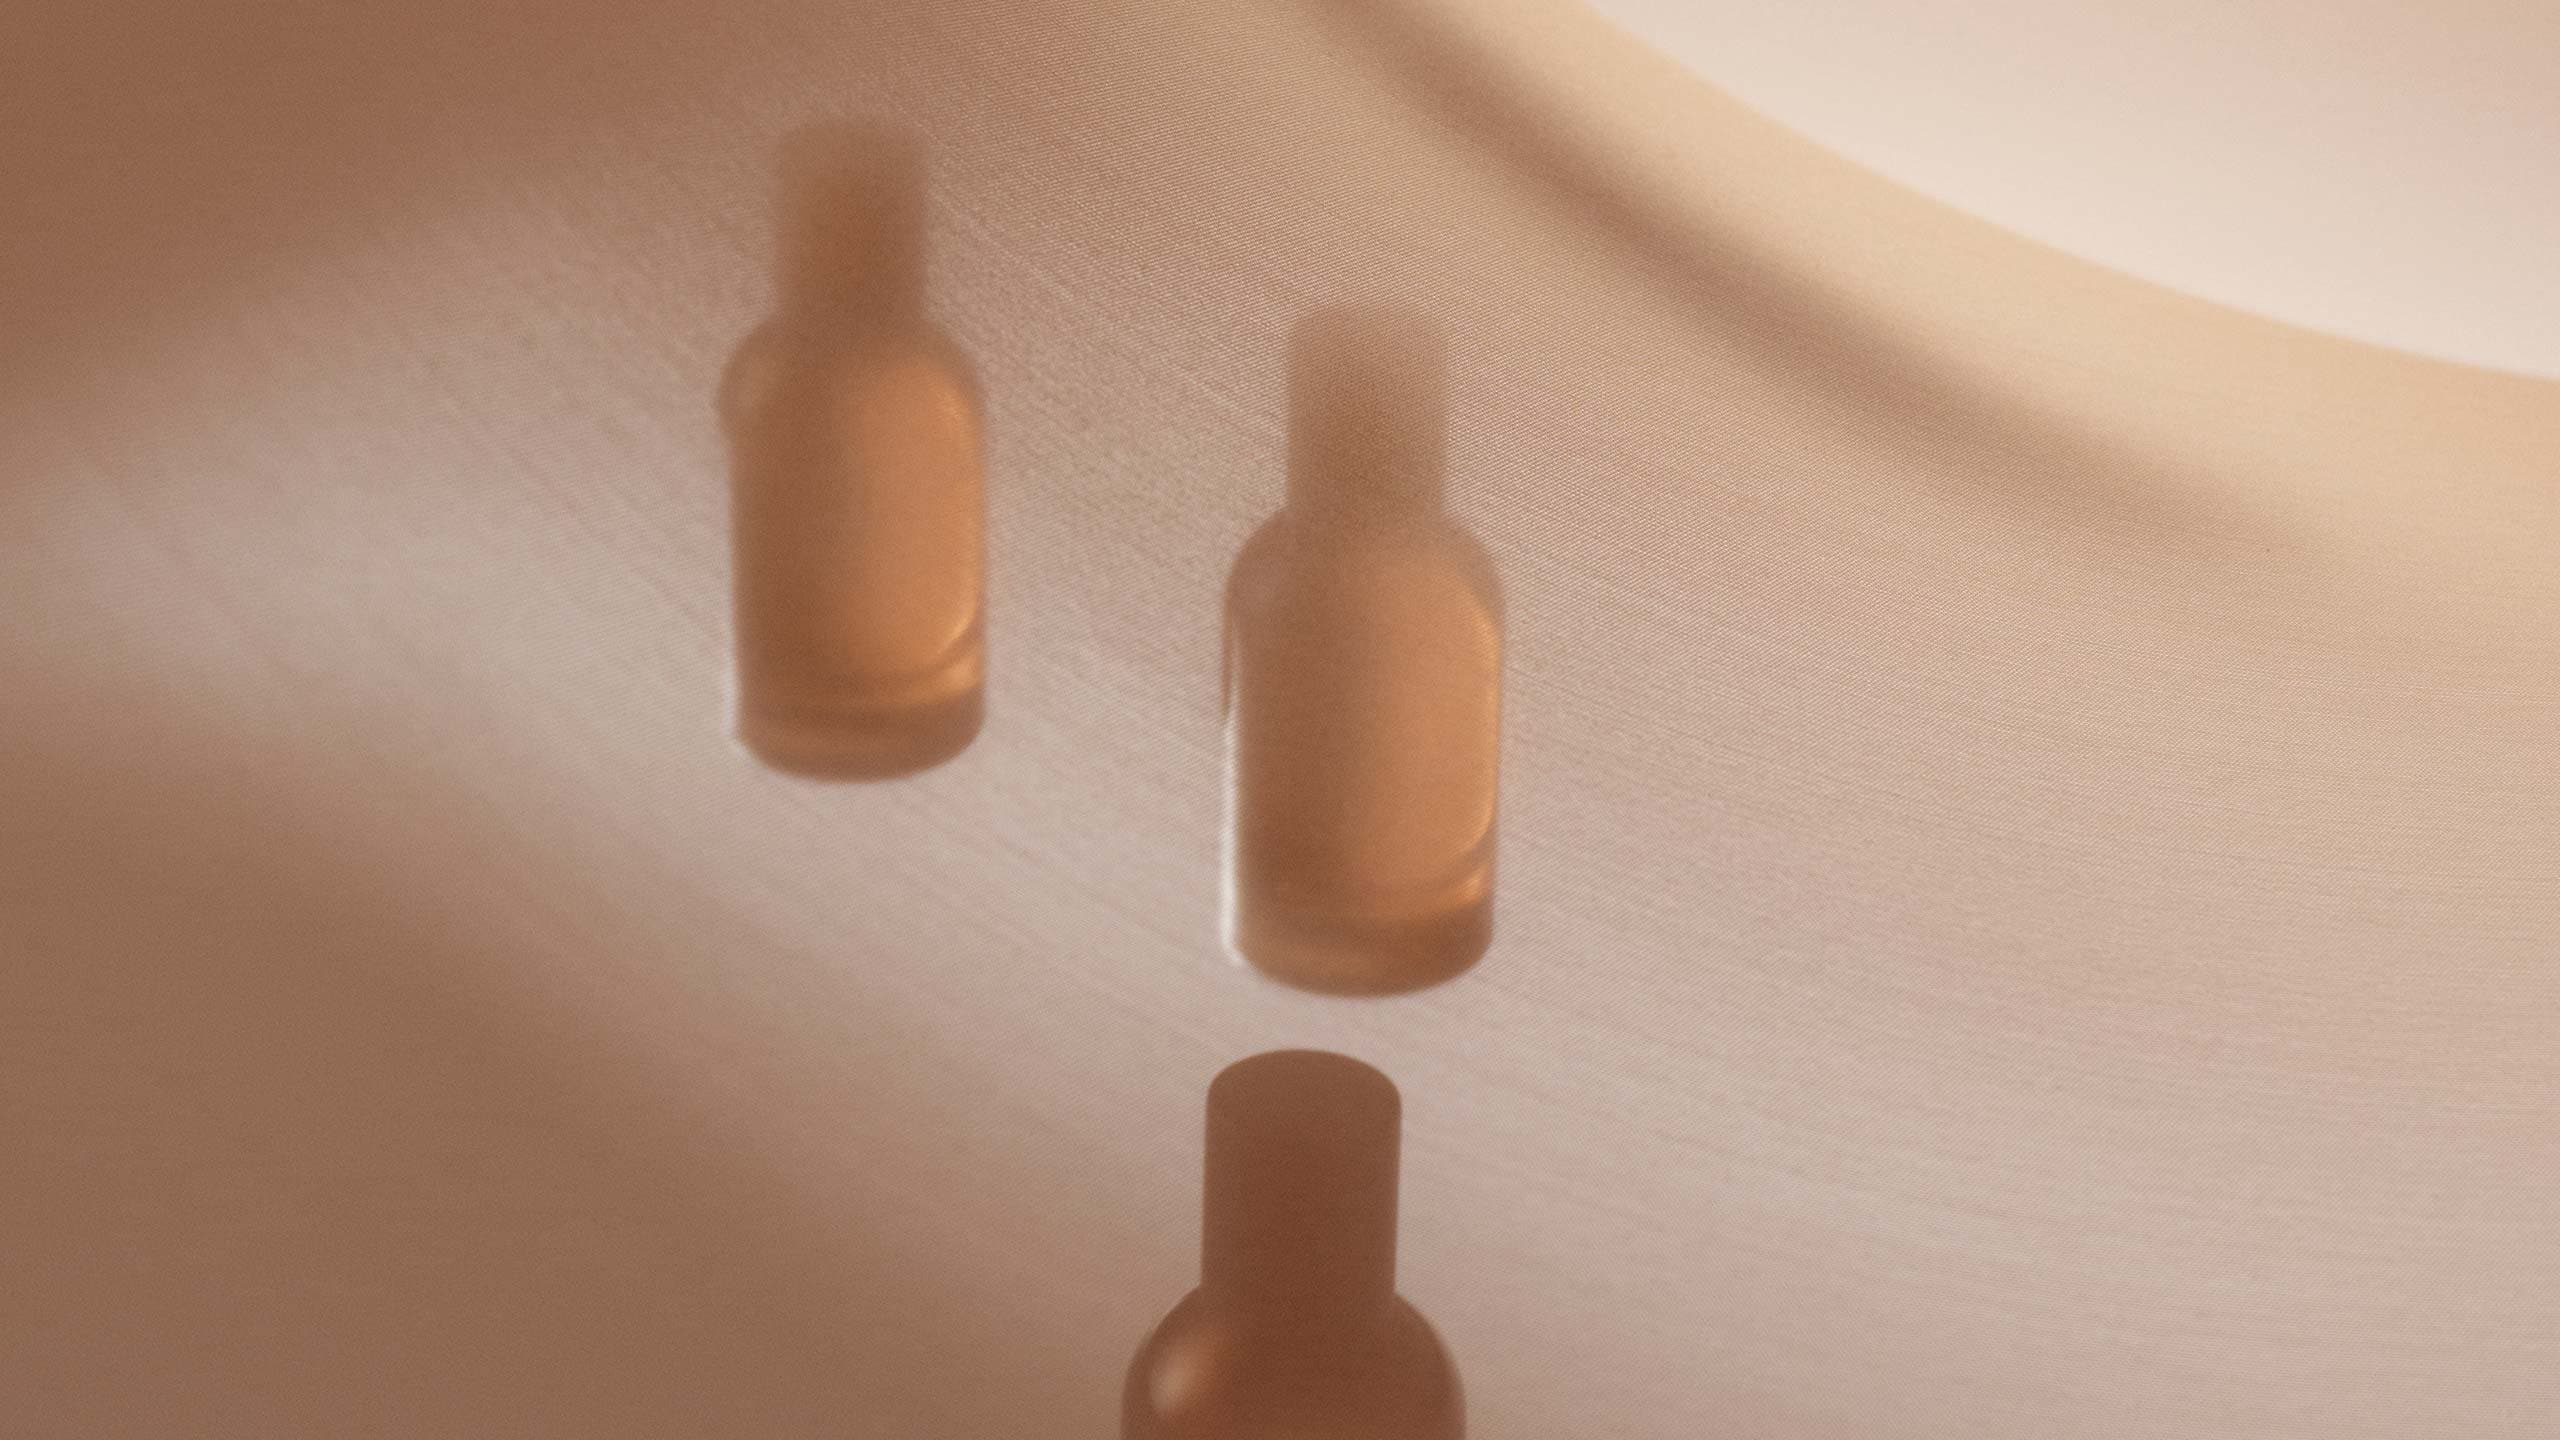 Three amber glass fragrance bottles